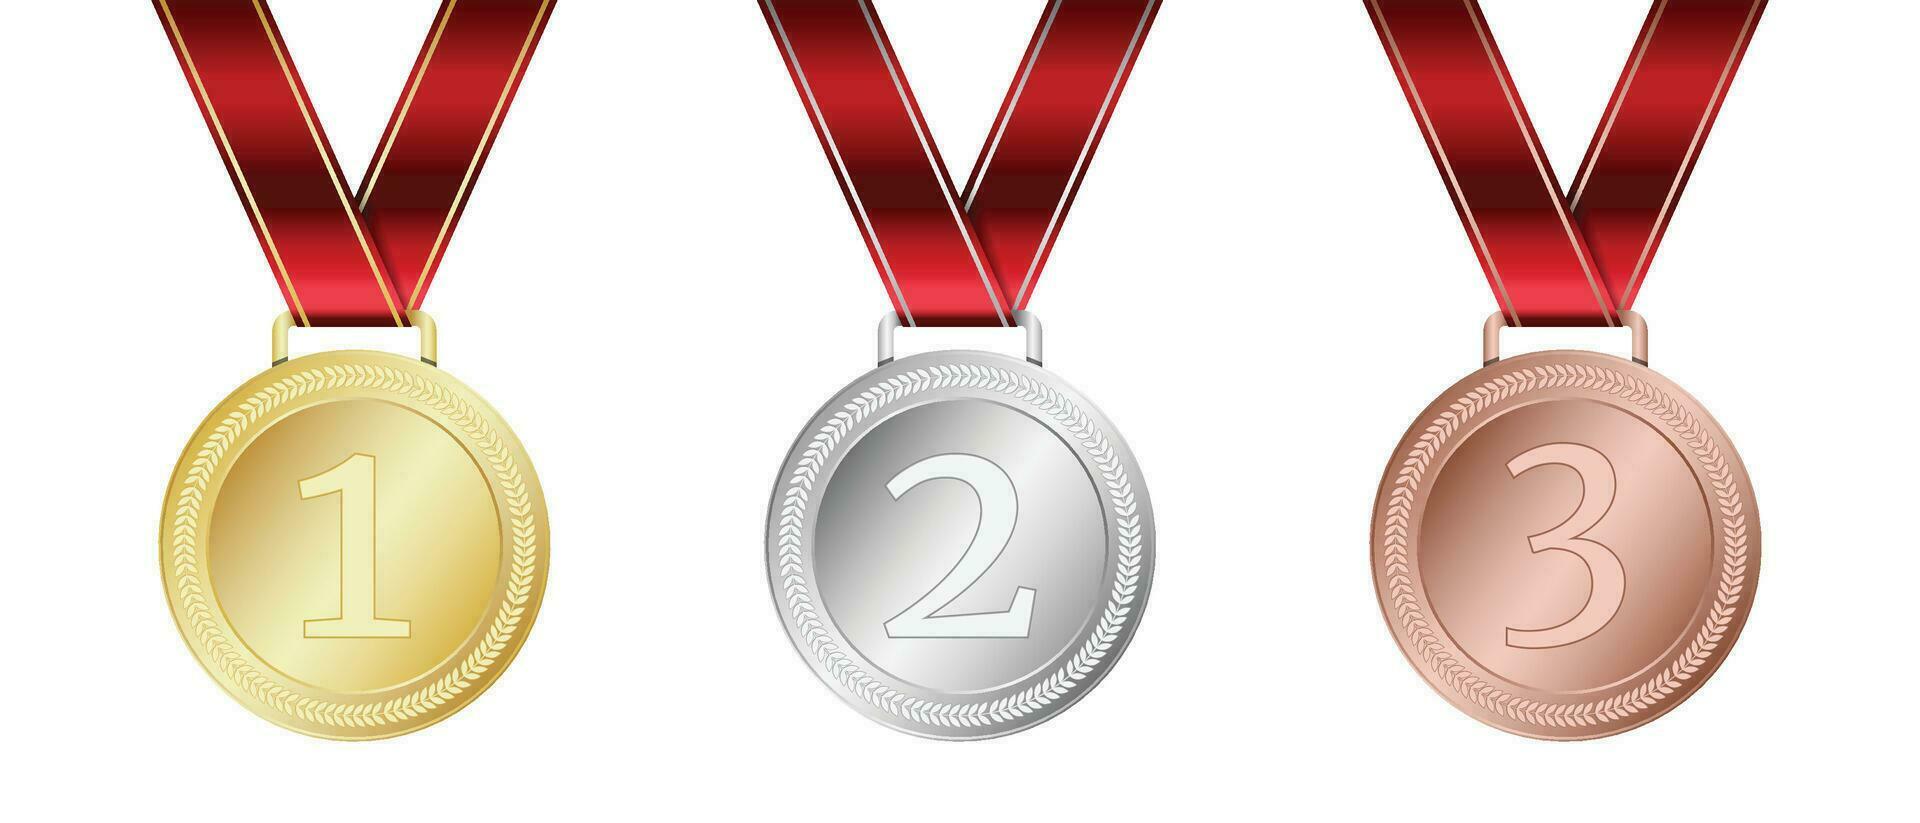 oro, plata, y bronce medalla. realista medalla colocar. premios para ganador. premio con cinta. medalla vector conjunto